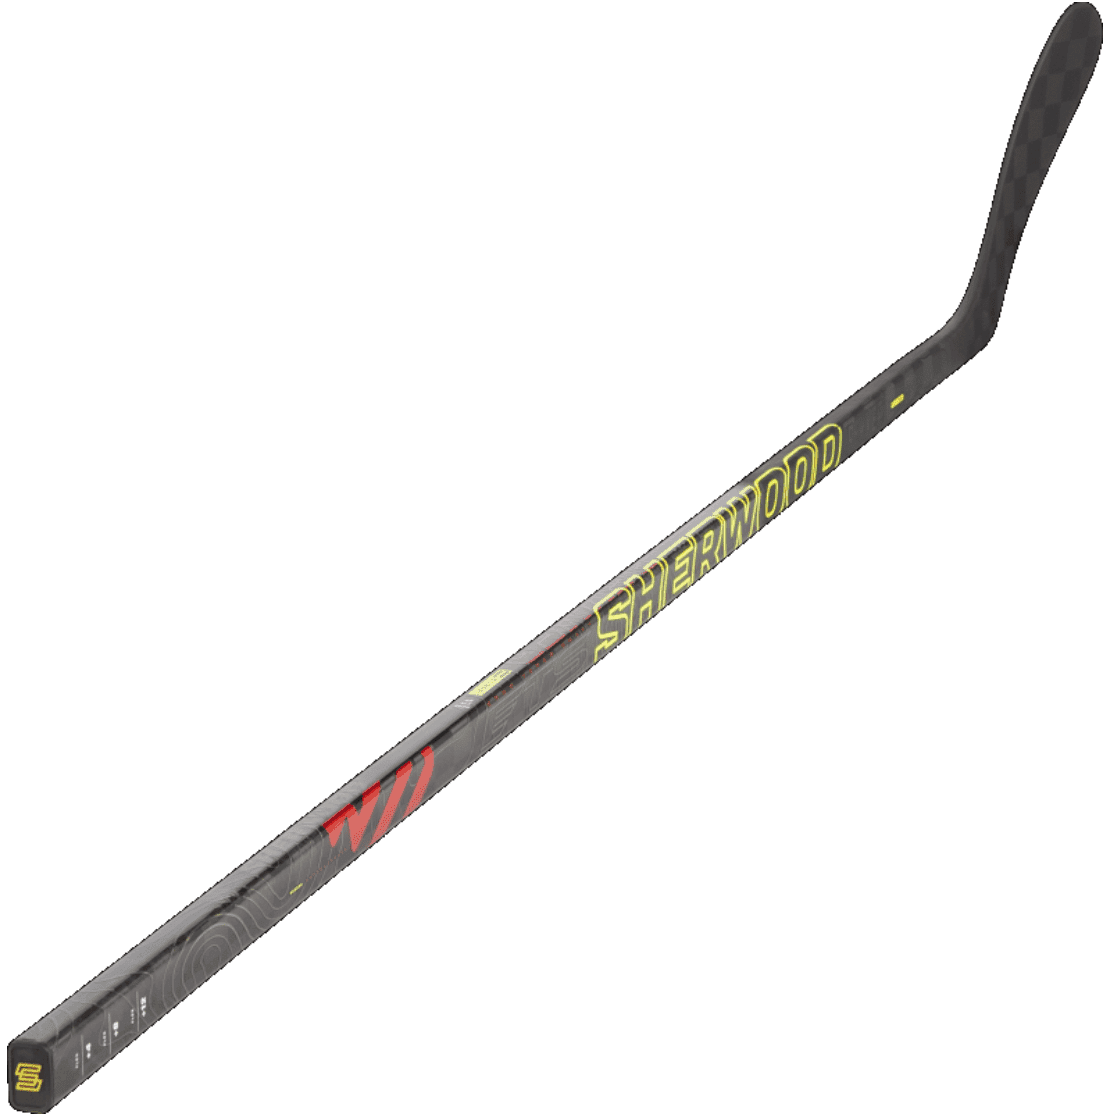 Sherwood Rekker Legend PRO Ice Hockey Stick Intermediate